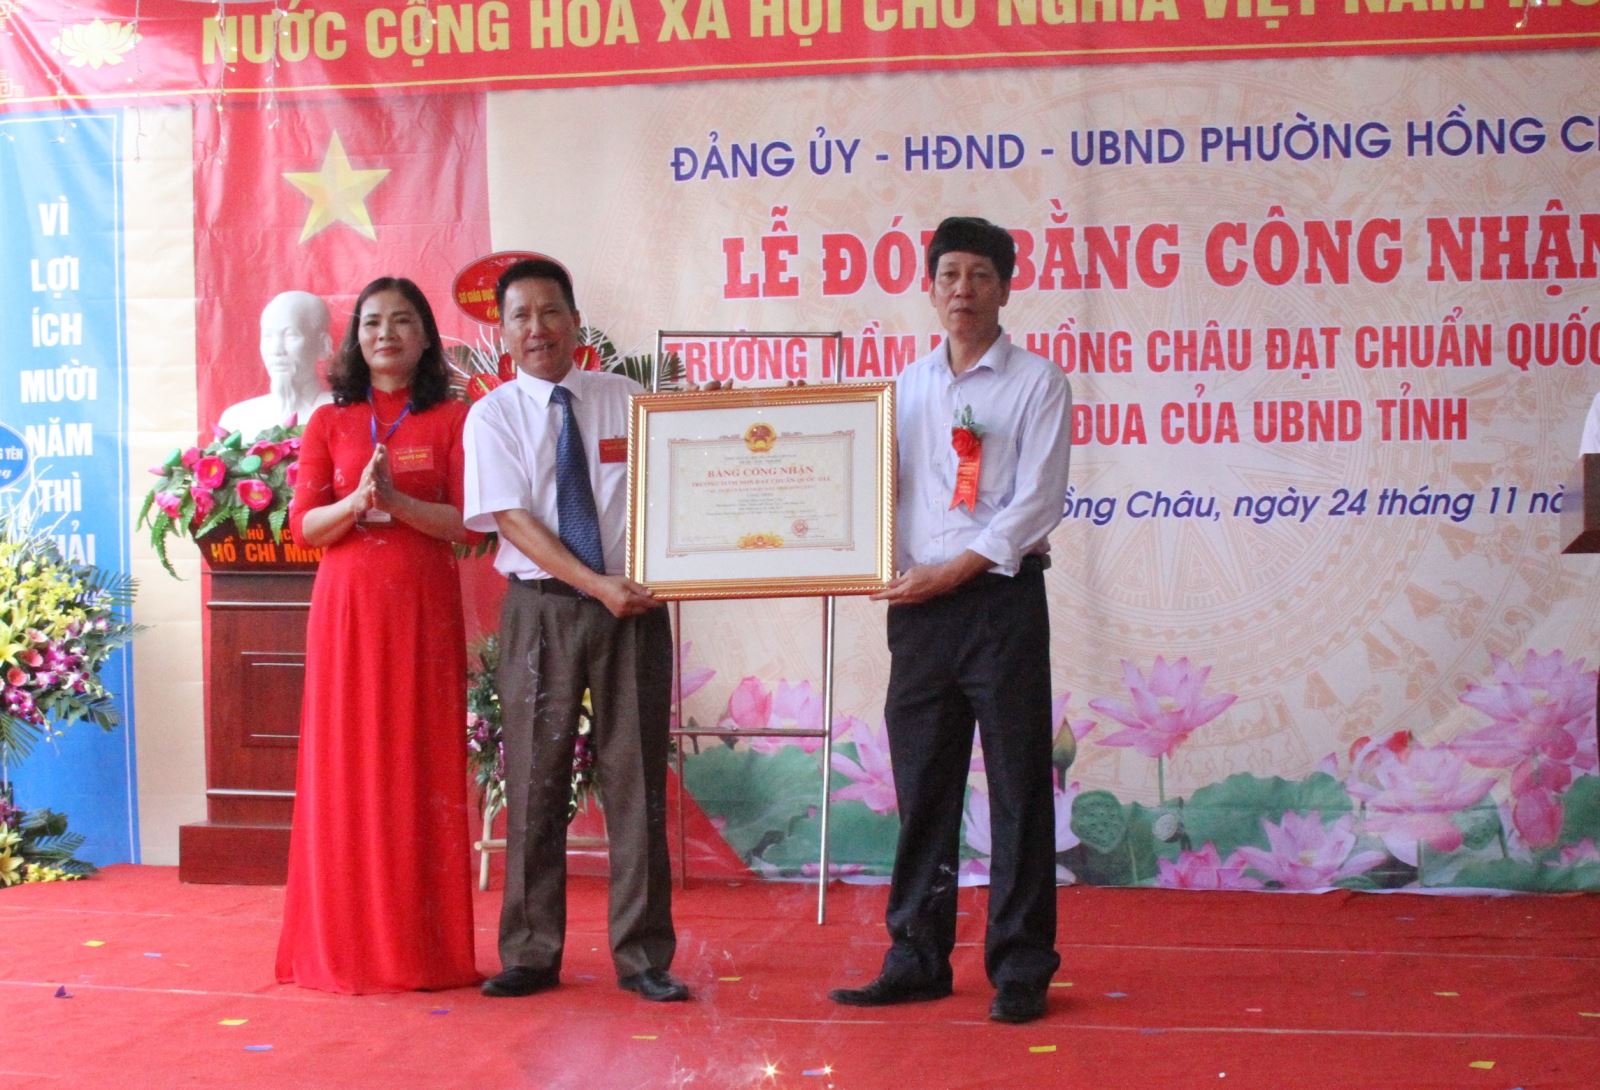 Phường Hồng Châu tổ chức lễ đón Bằng công nhận  trường Mầm non Hồng Châu đạt chuẩn quốc gia mức độ I